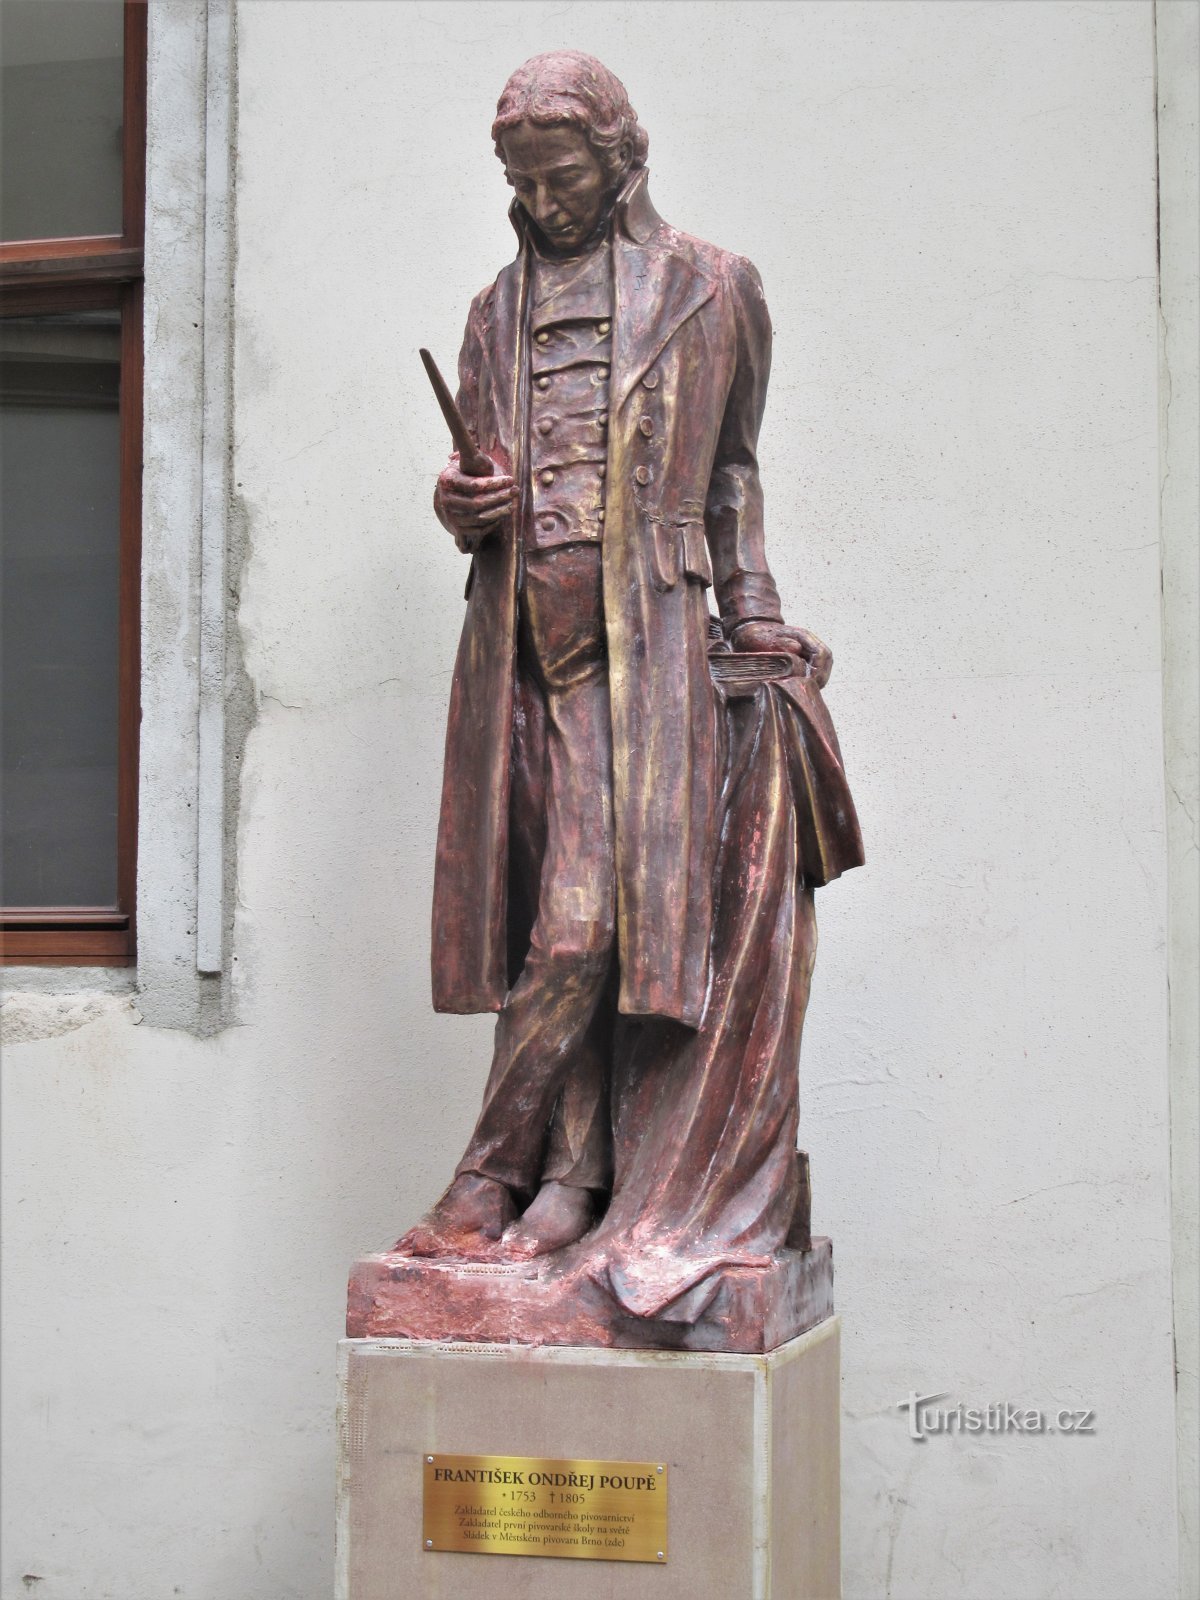 Μπρνο - άγαλμα του František Ondřej Poupět